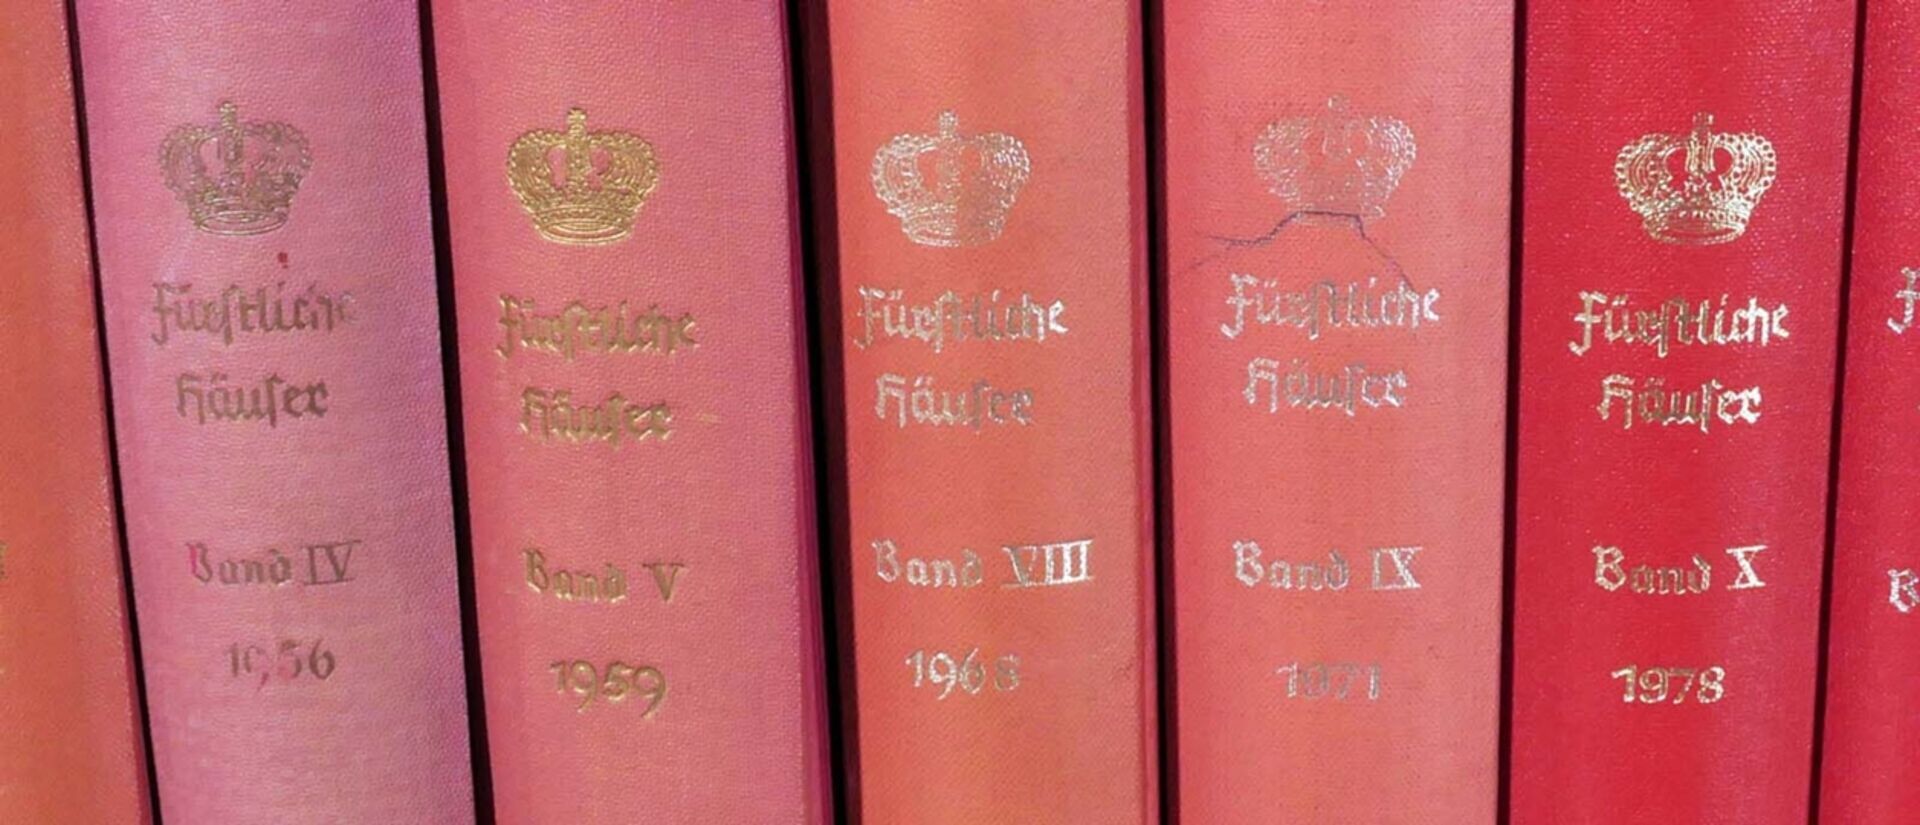 Genealogisches Handbuch des Adels "Fürstliche Häuser", 15 Bände, 1951 - 1997, versch. Erhalt. - Bild 3 aus 6